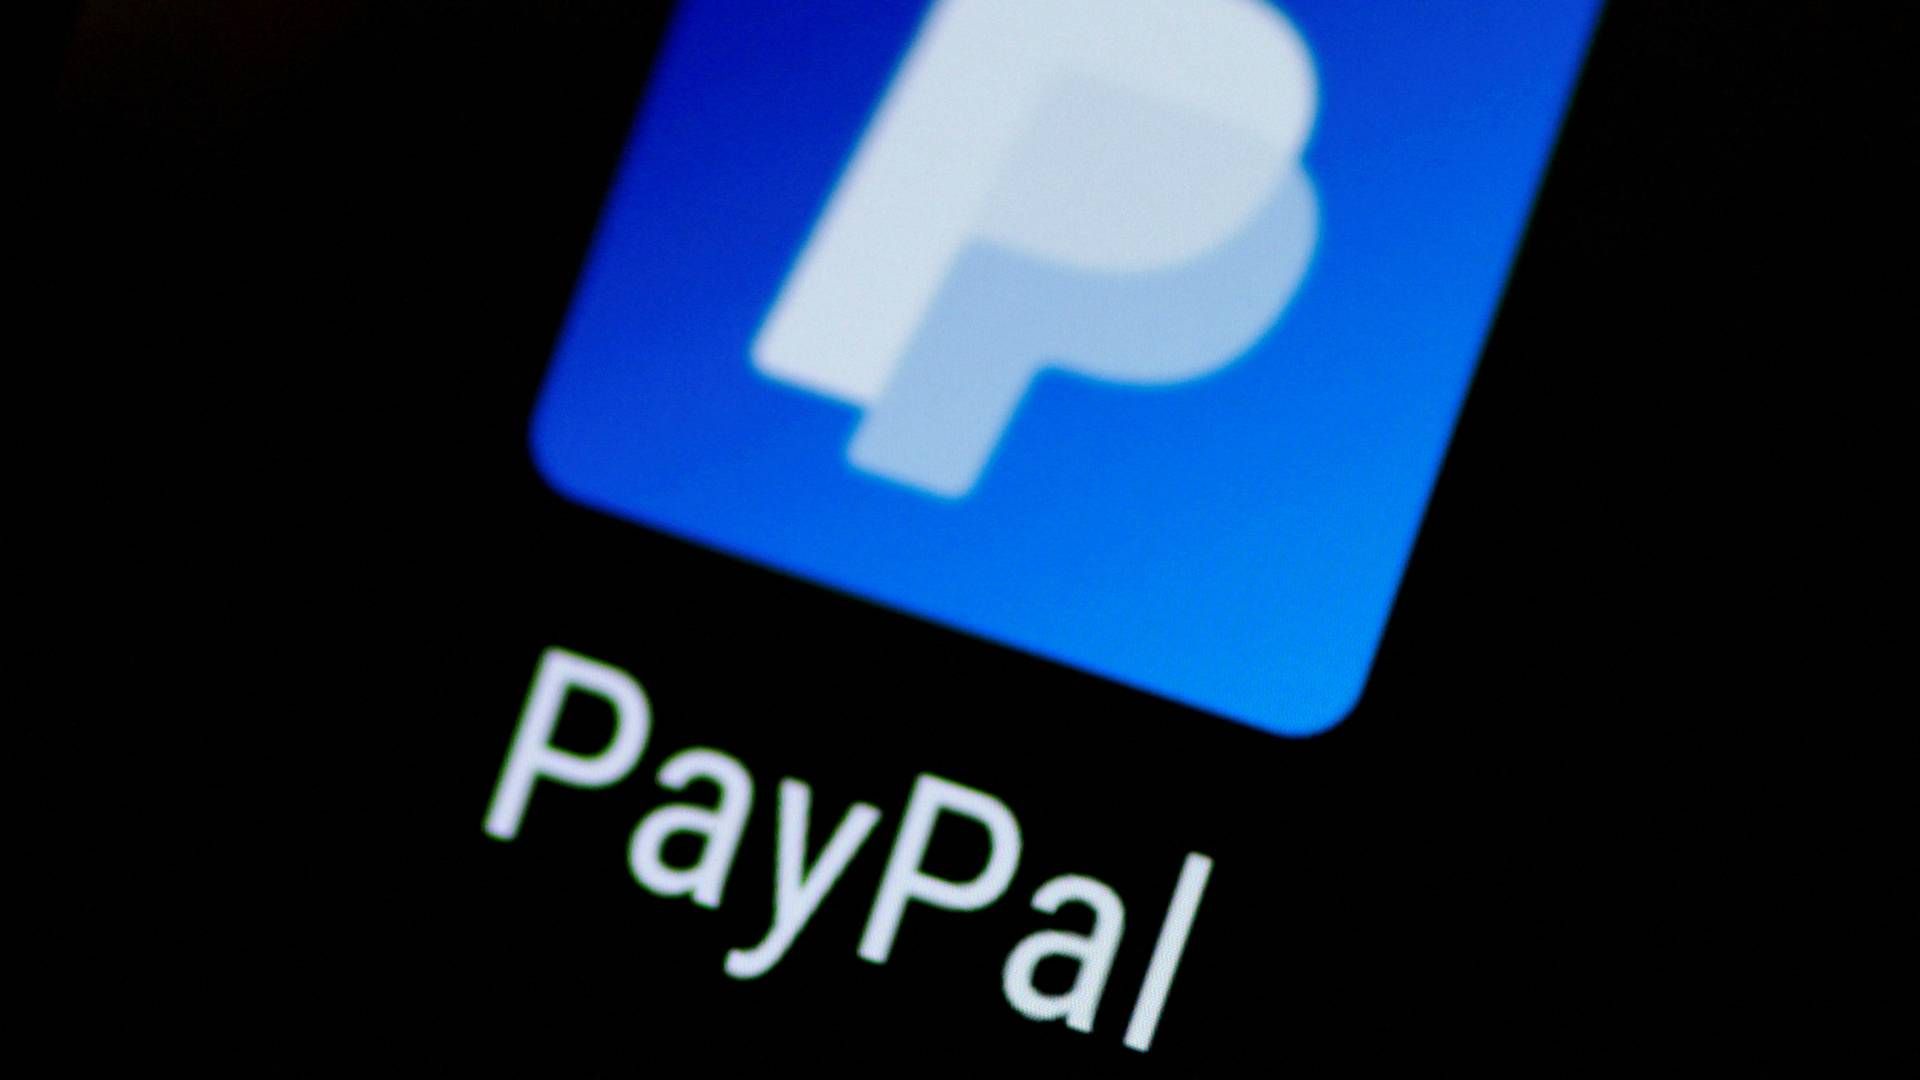 Paypal-aktien stiger efter positiv udvikling. | Foto: THOMAS WHITE/REUTERS / X90030